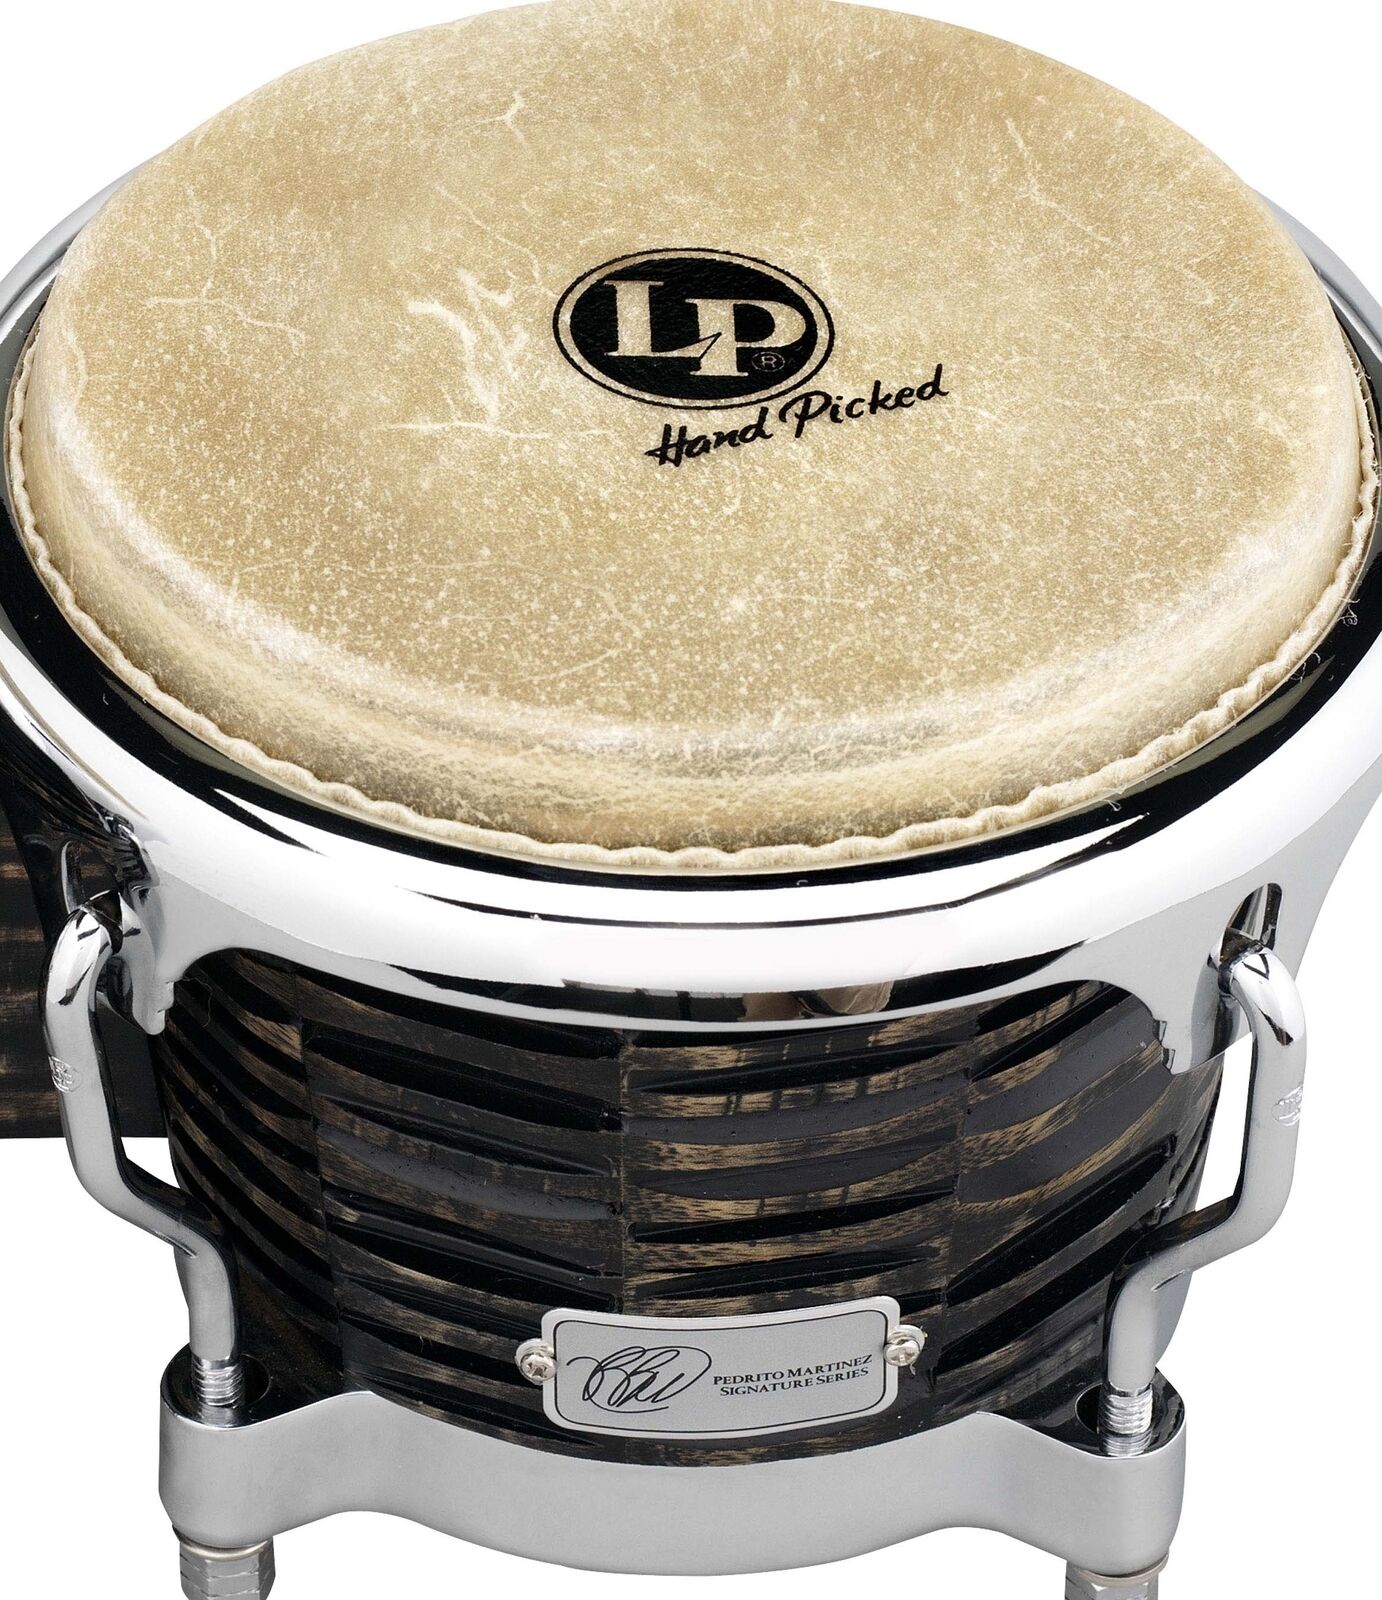 Latin Percussion Bongos Drums Set Pedrito Martinez Signature Series 4